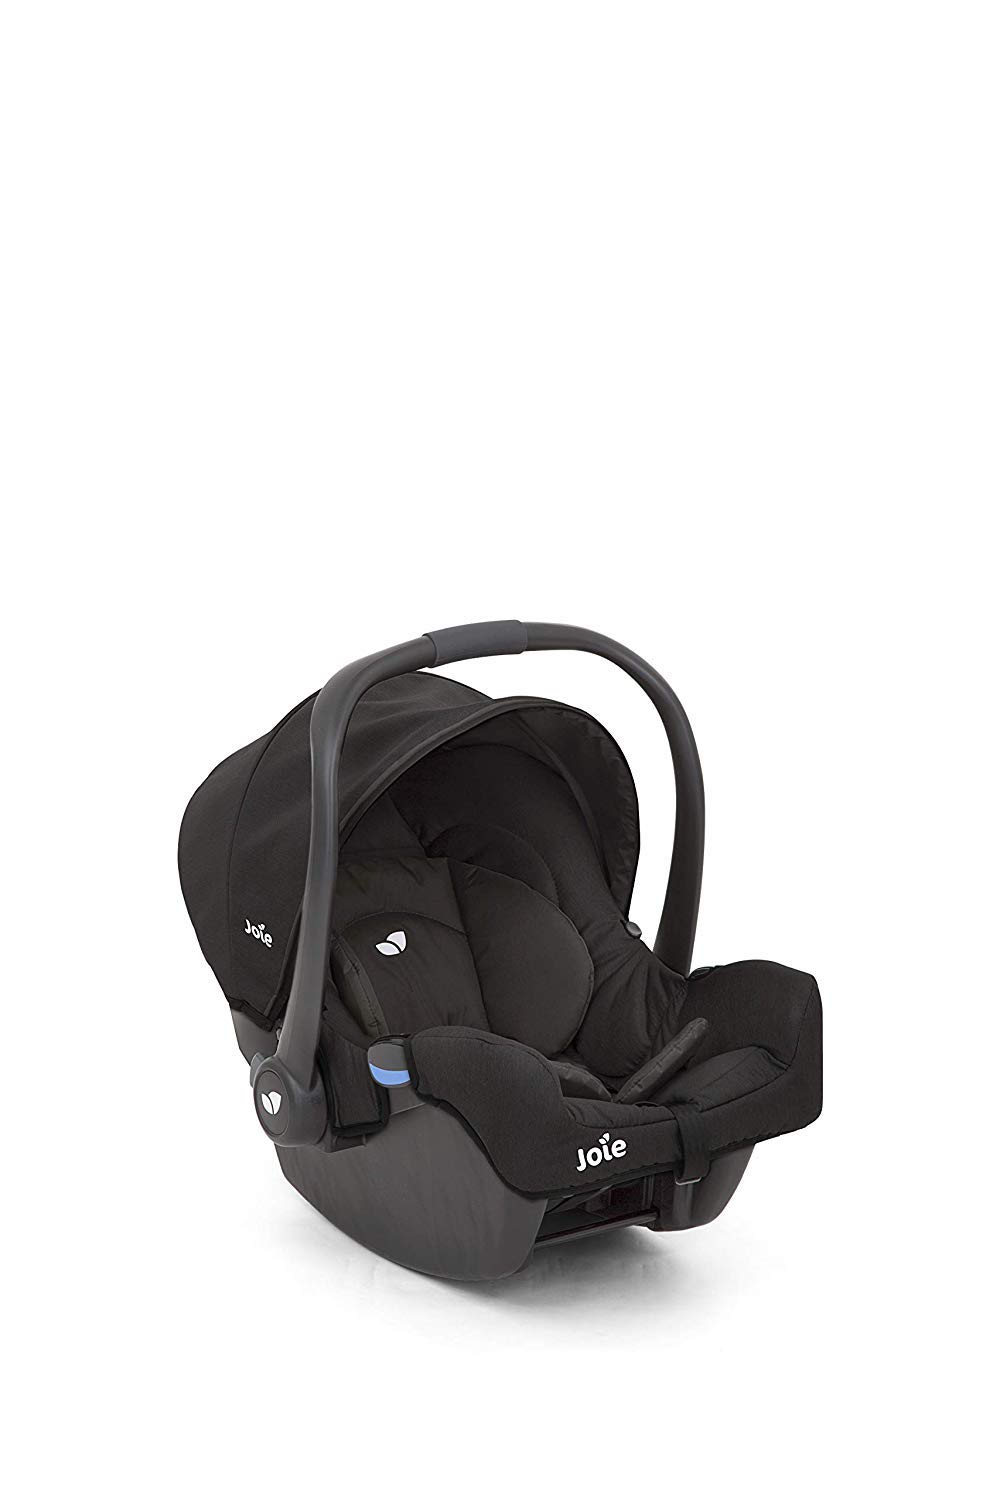 Joie Gemm Ember Baby Car Seat